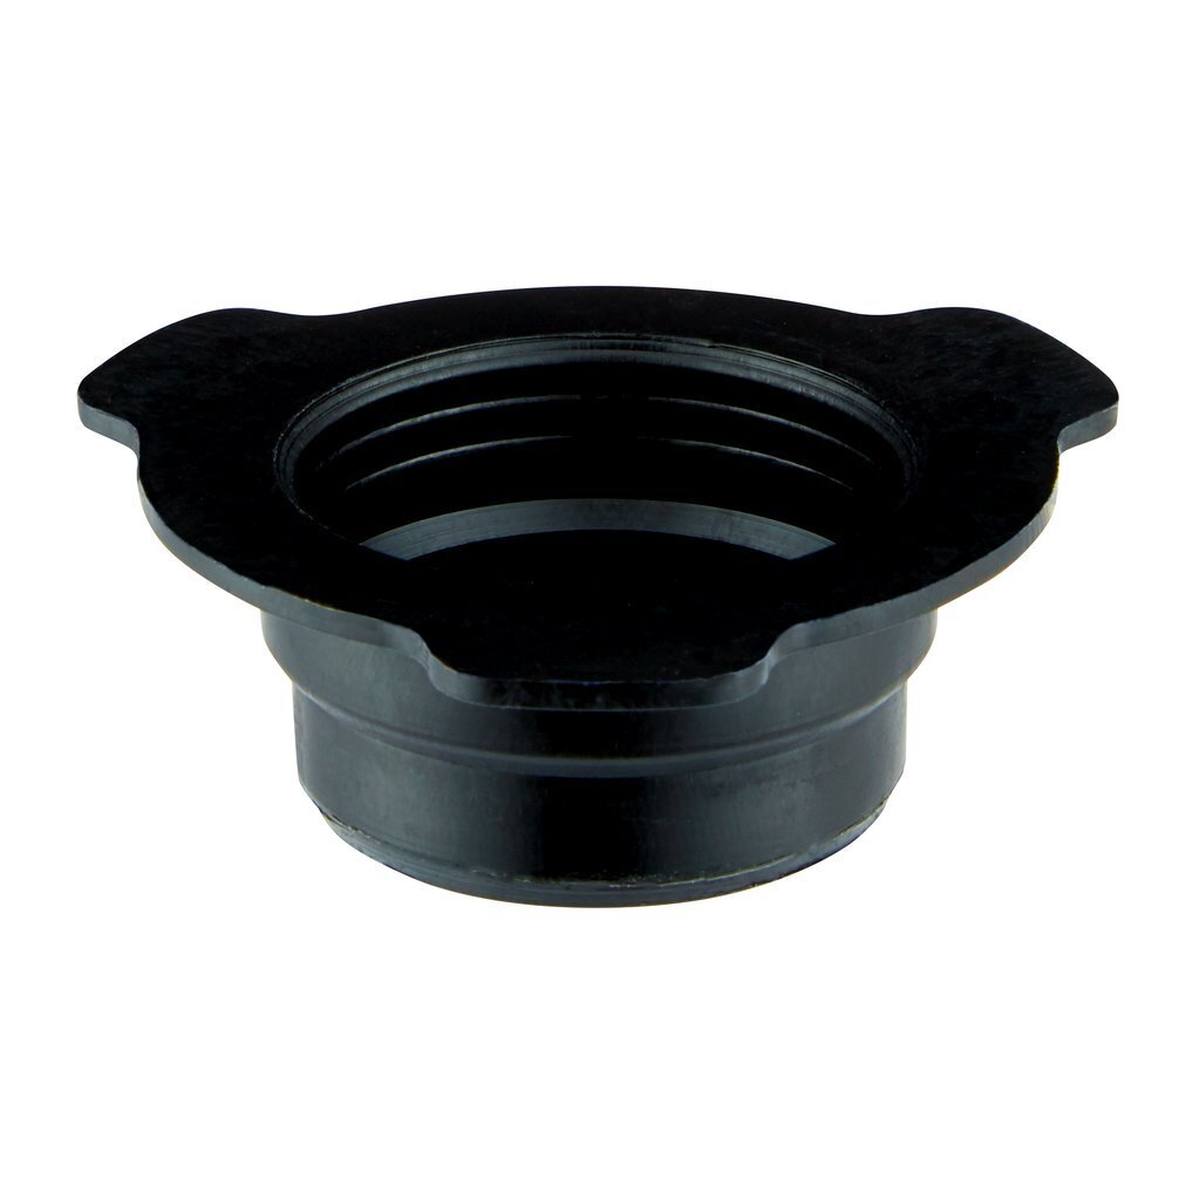 3M PPS Series 2.0 UV set, standard, 650 ml, 200Î¼ filter, 50 inner beakers / 50 lids / 32 caps / 1 outer beaker #26710